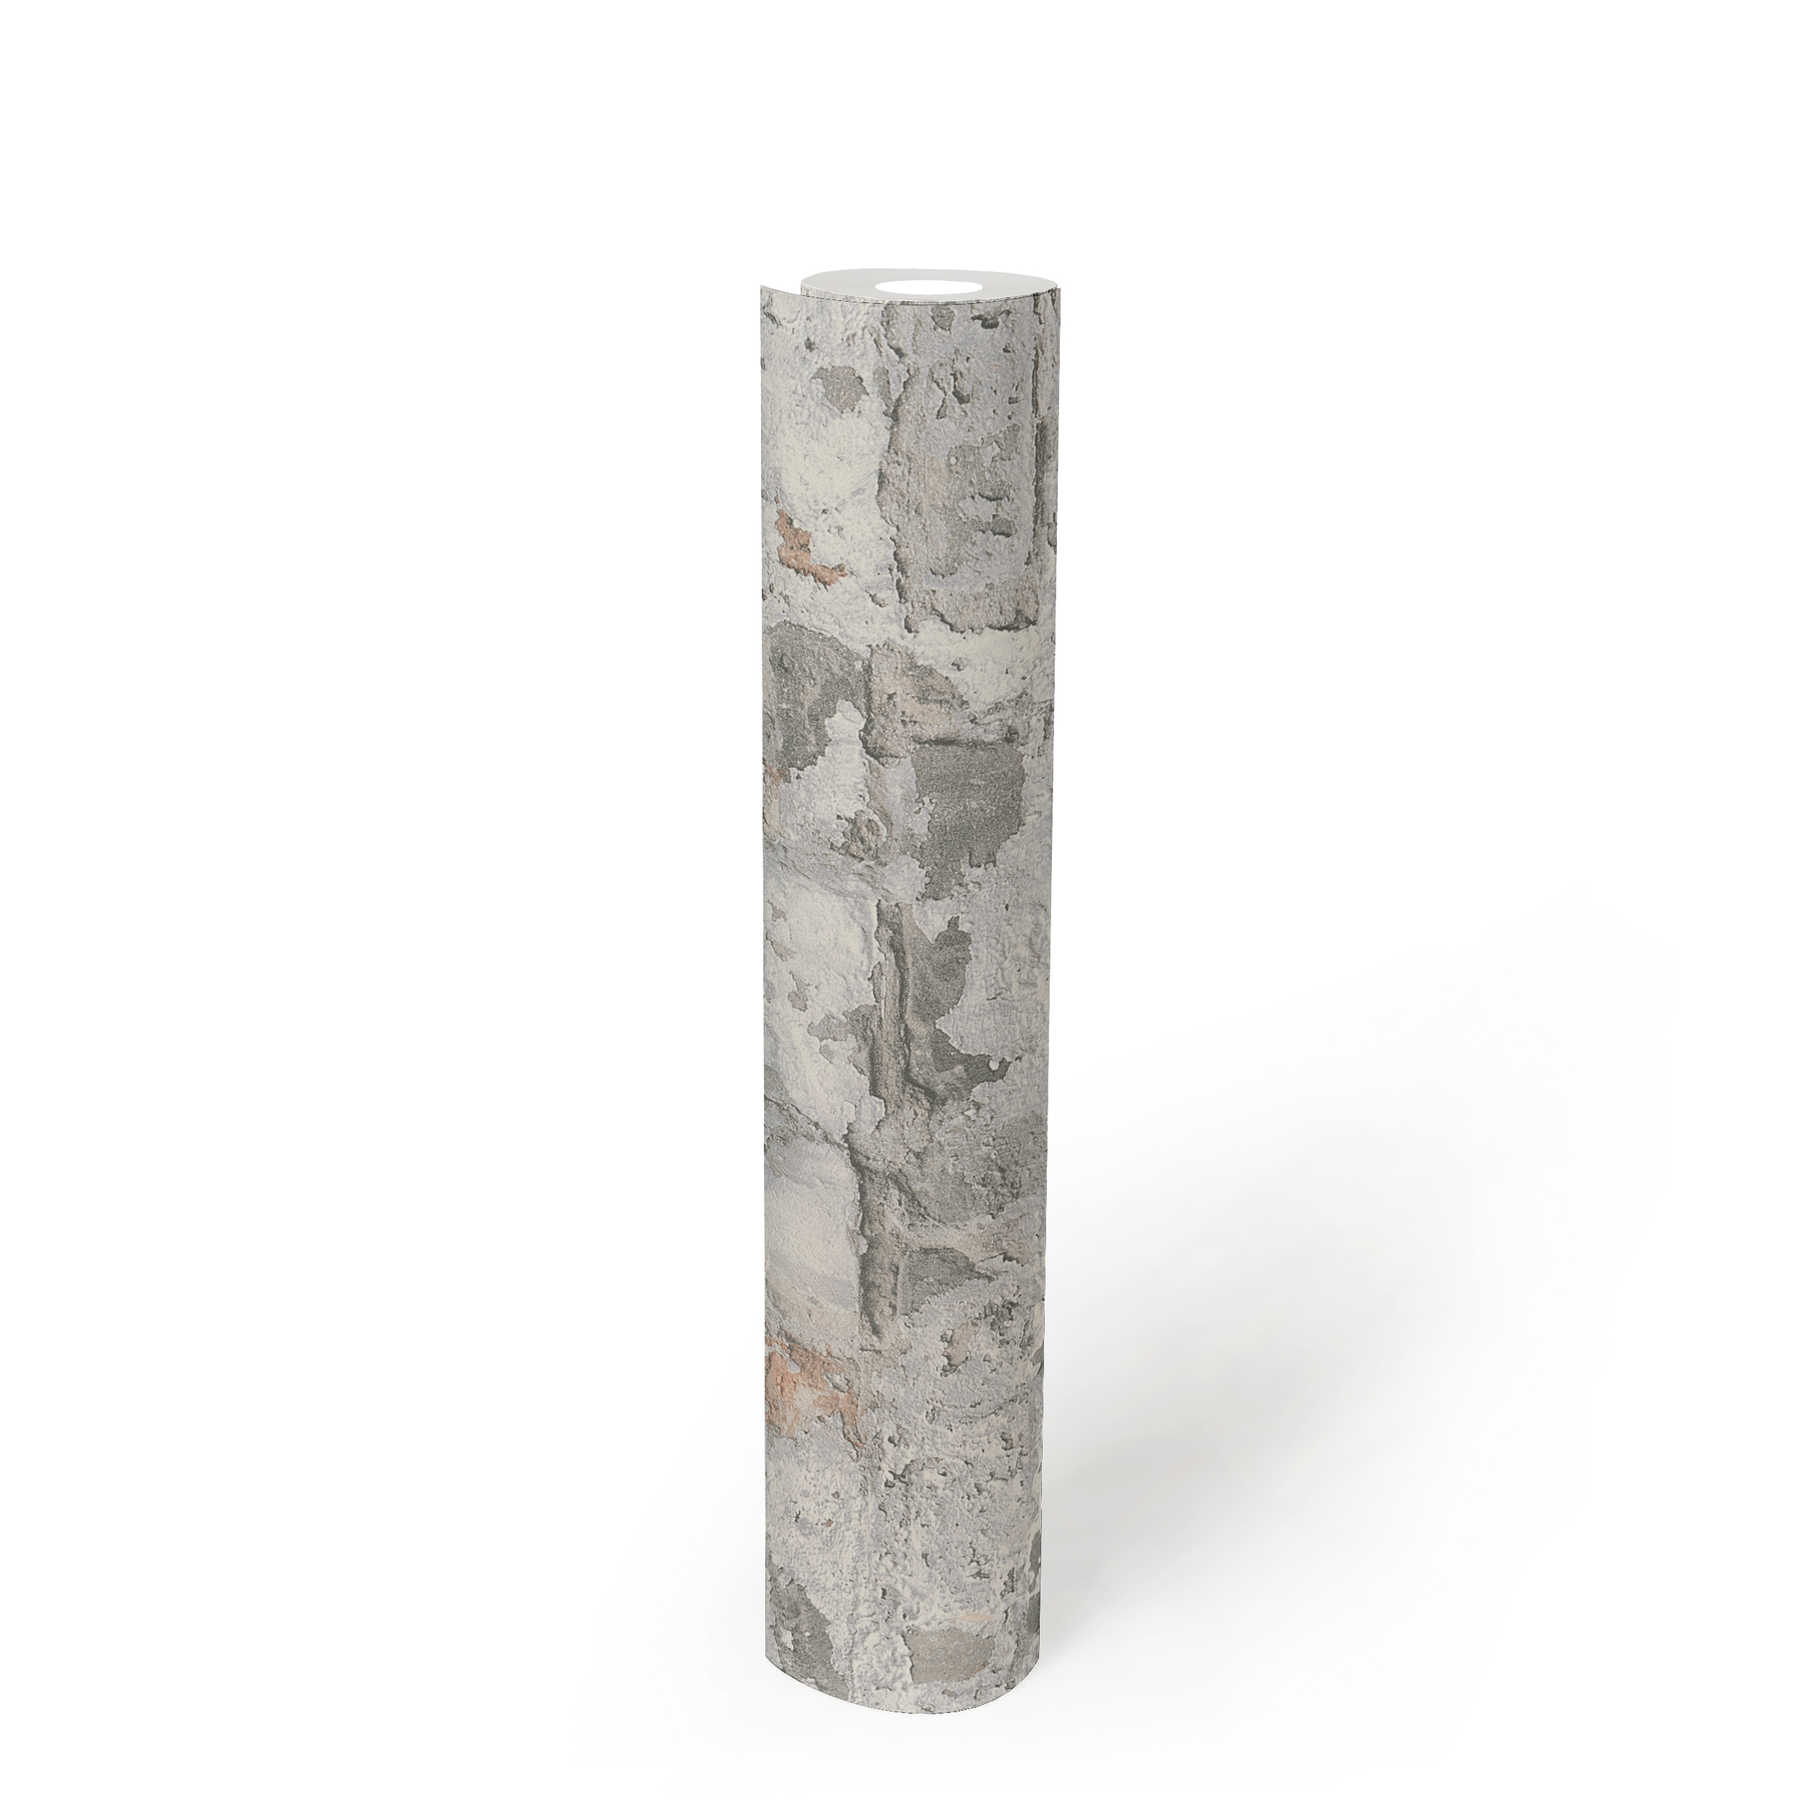             Rustiek muurbehang met bakstenen in gebruikt design - grijs, wit
        